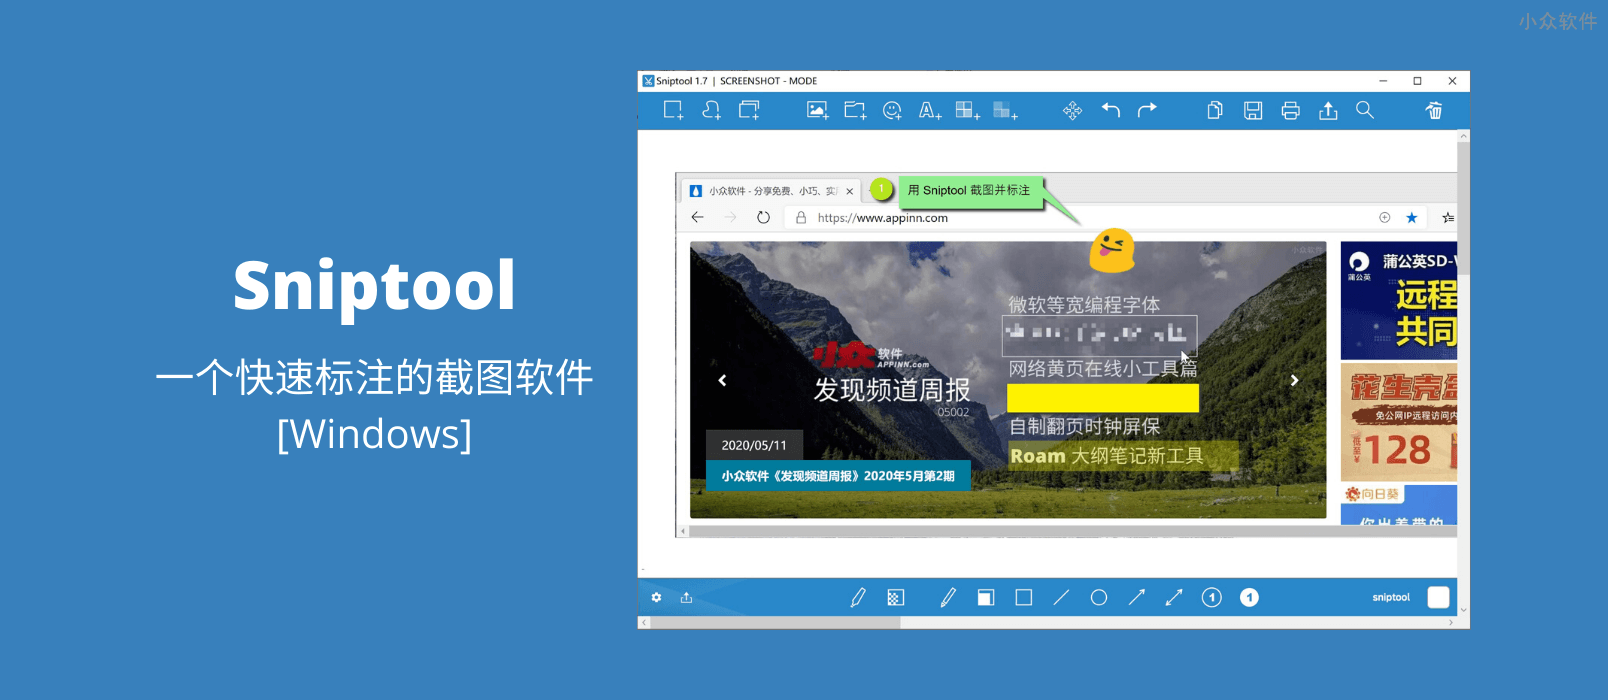 Sniptool – 一个快速标注的截图软件[Windows]